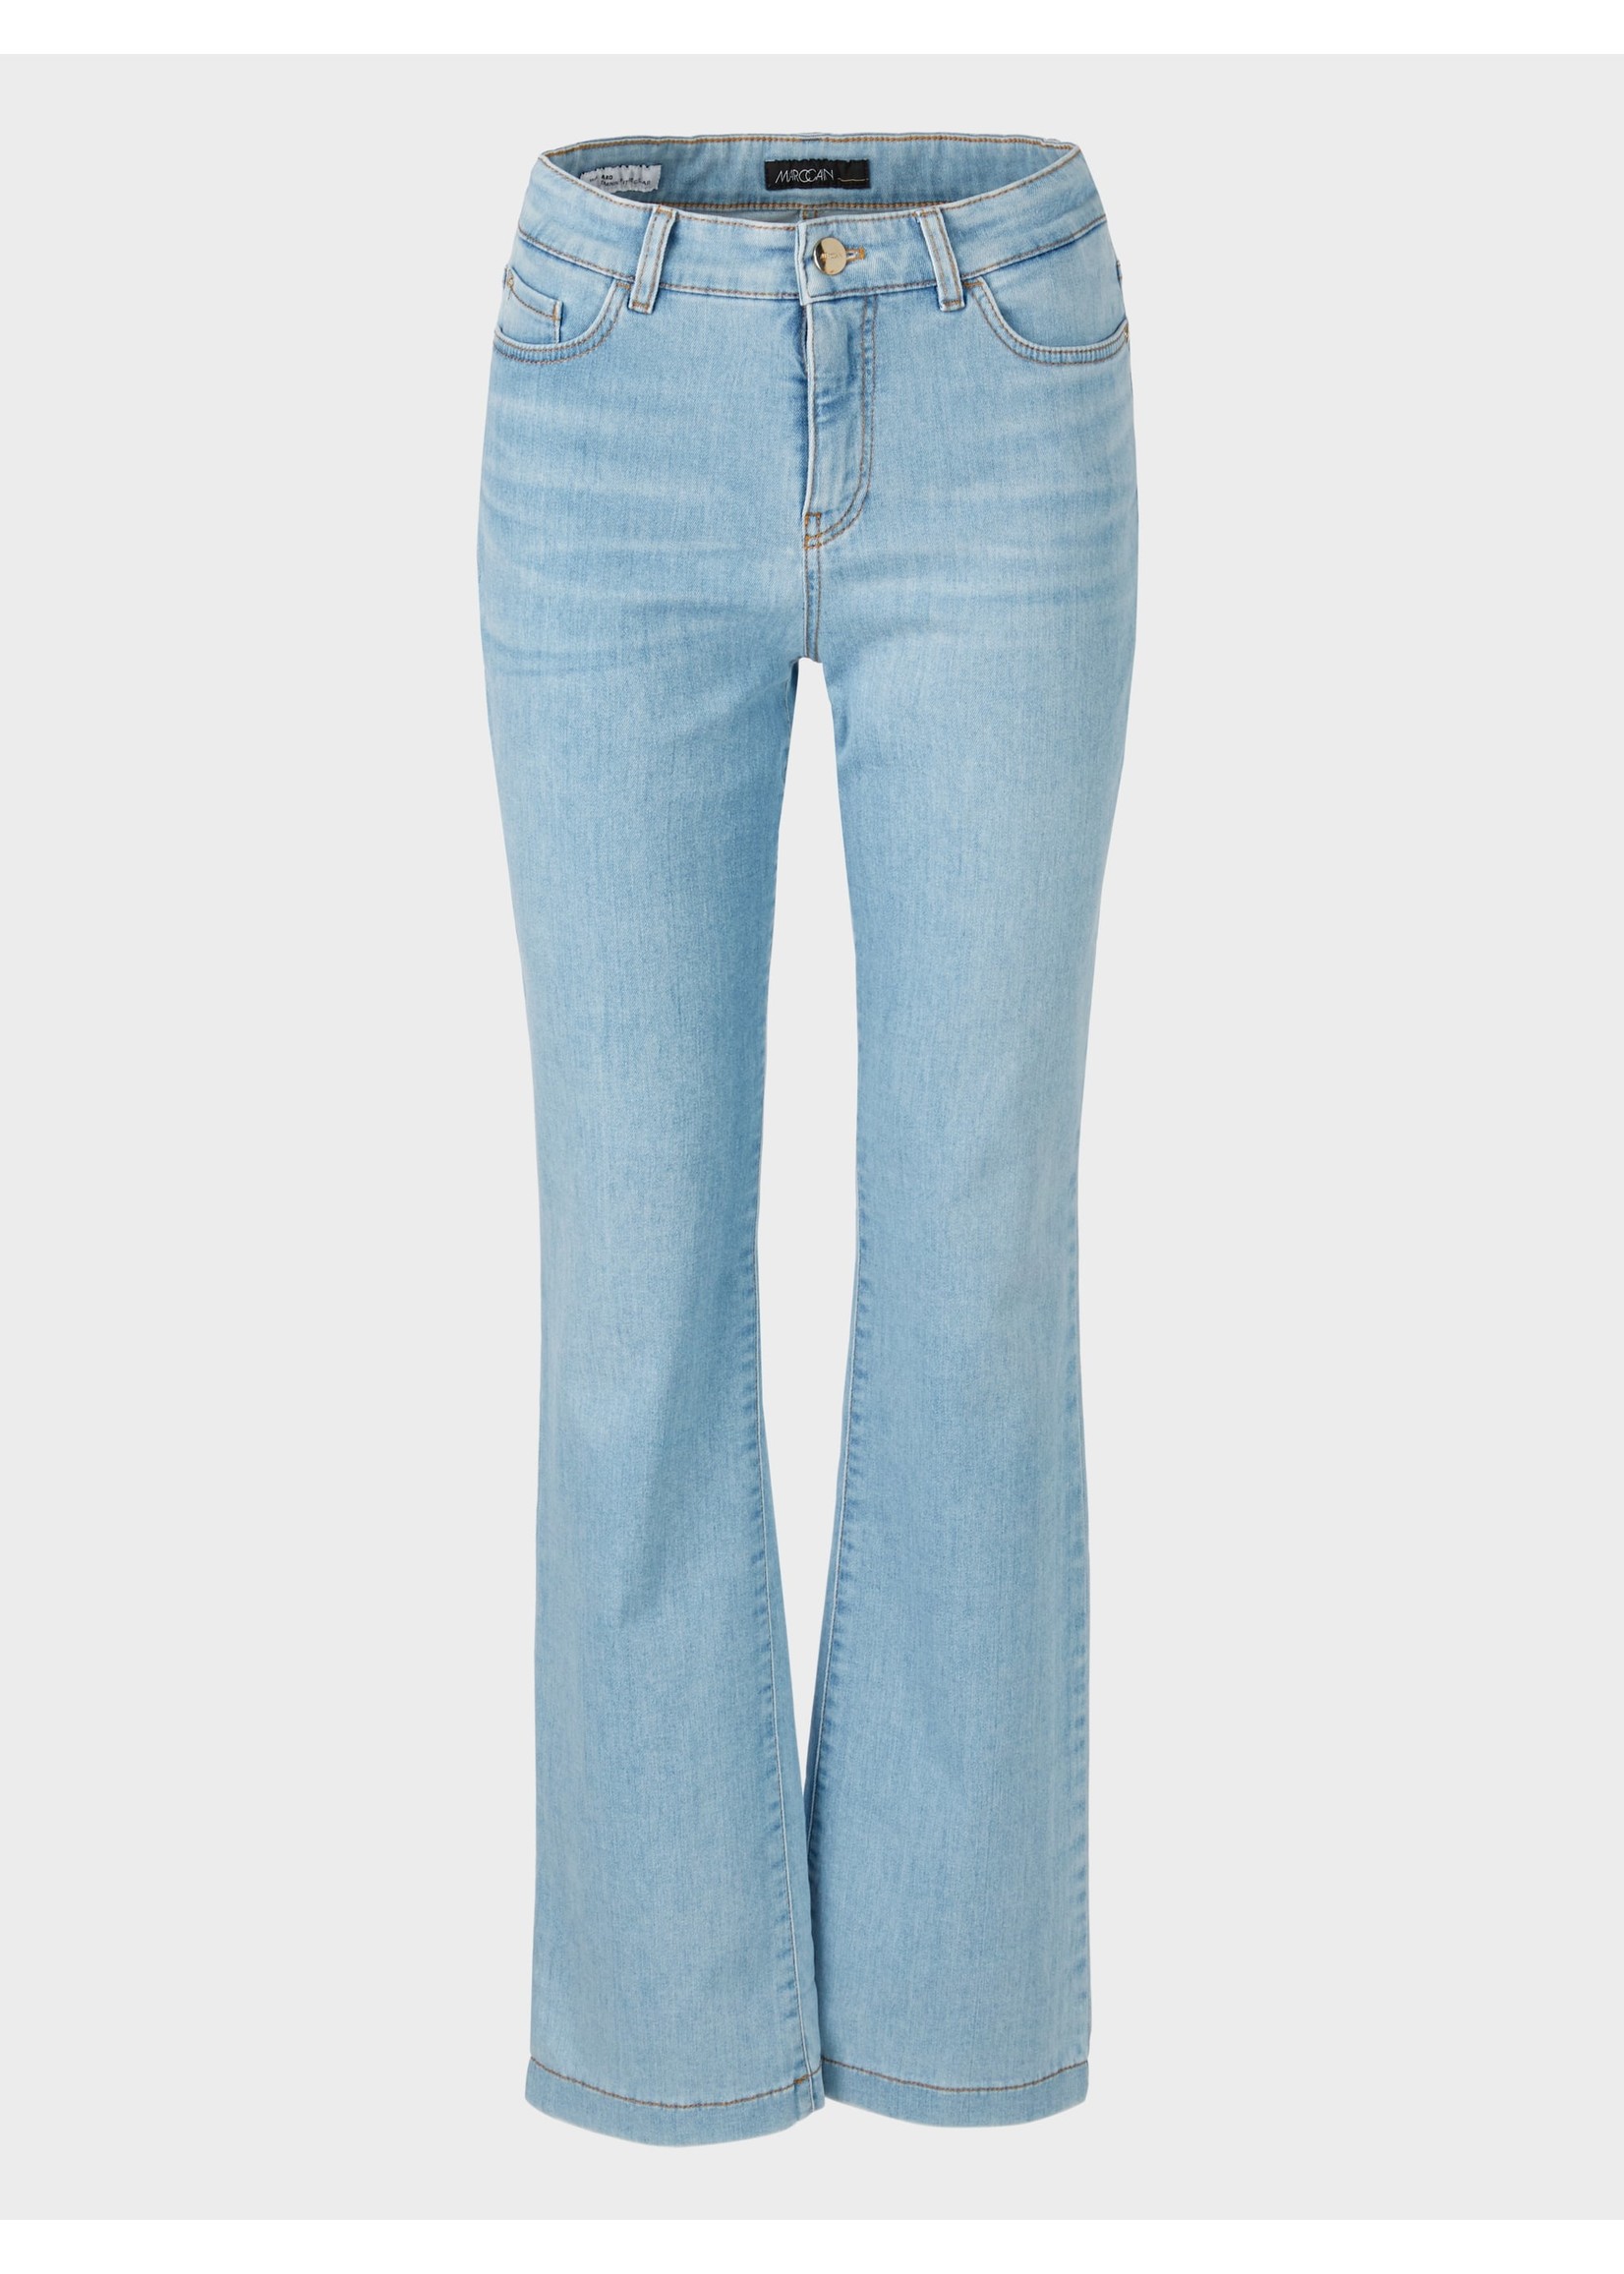 Marccain Pants Jeans UP 82.06 D51 351